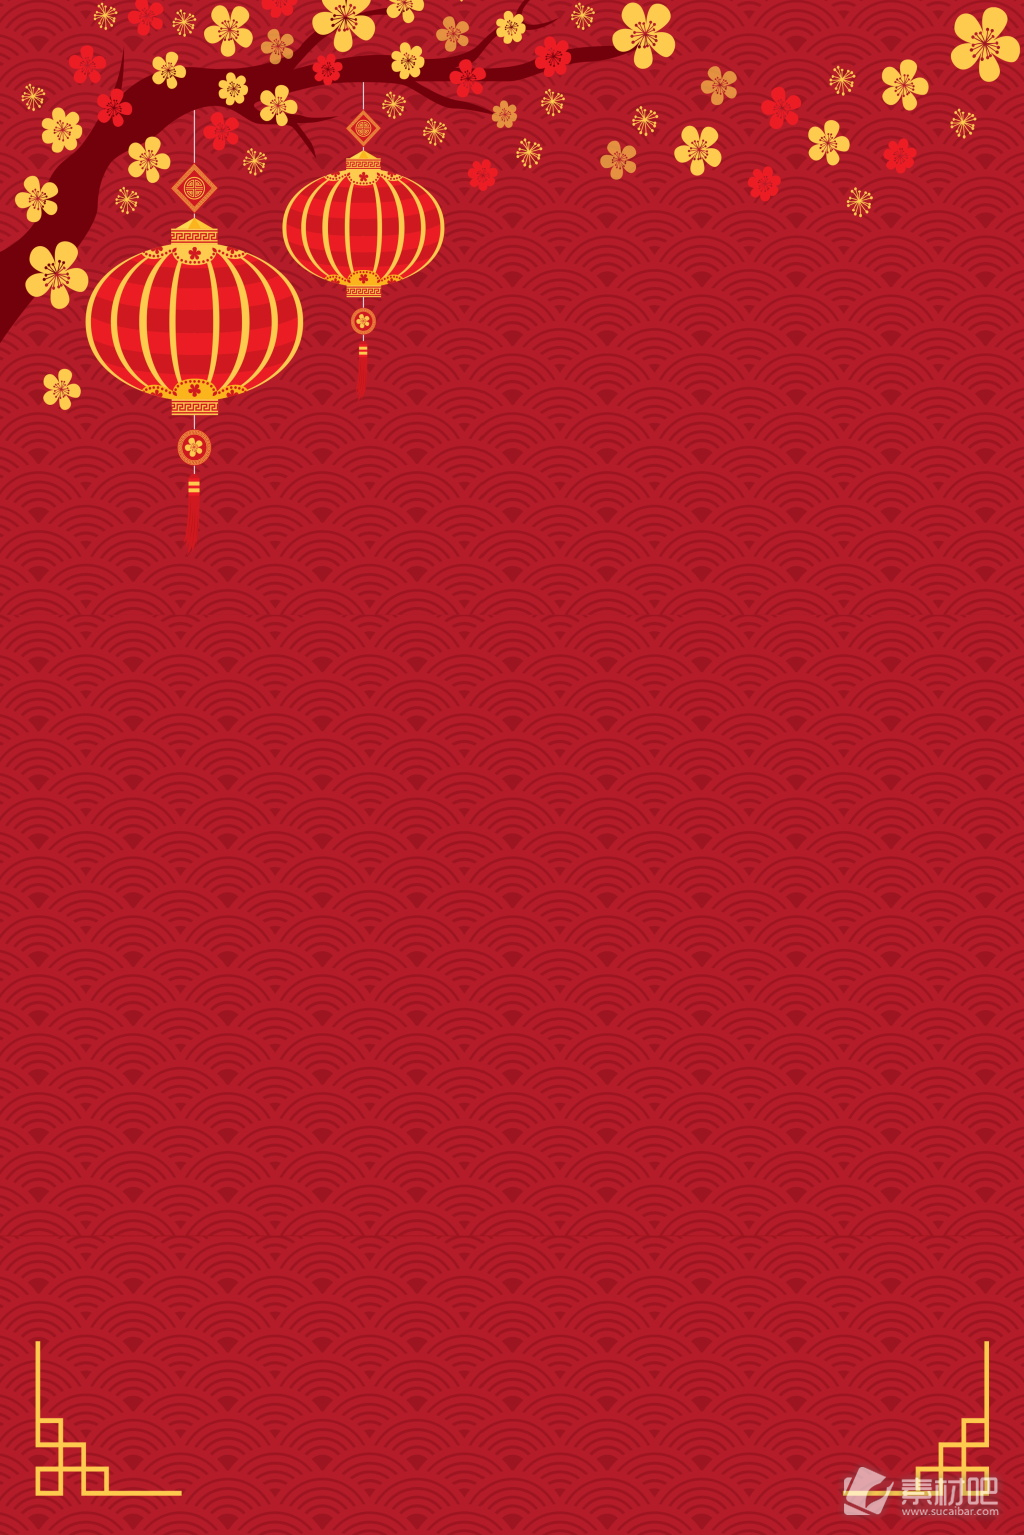 春节海报背景设计 红色灯笼除夕春节海报背景设计 素材吧